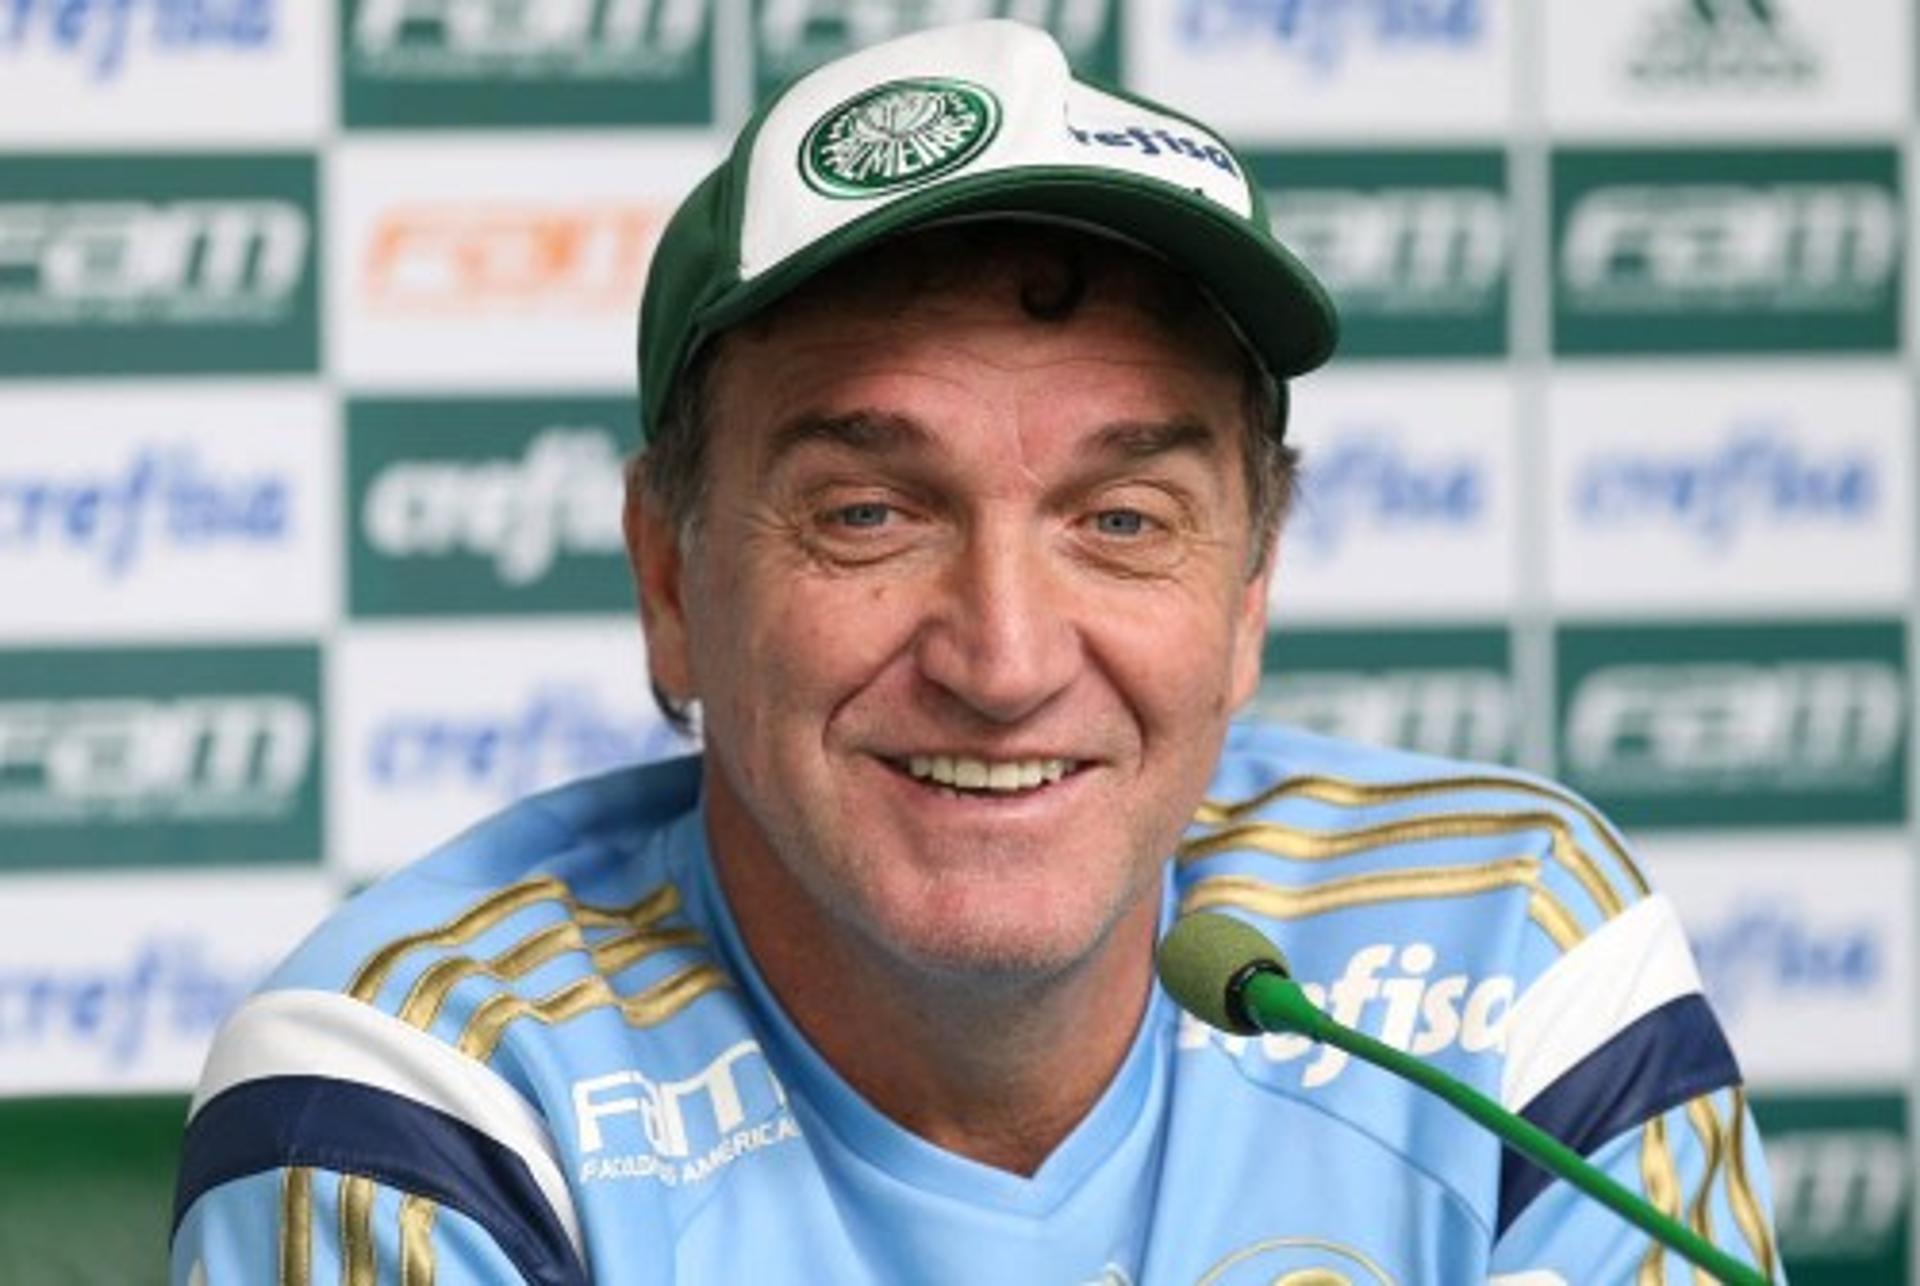 Cuca em entrevista no Palmeiras